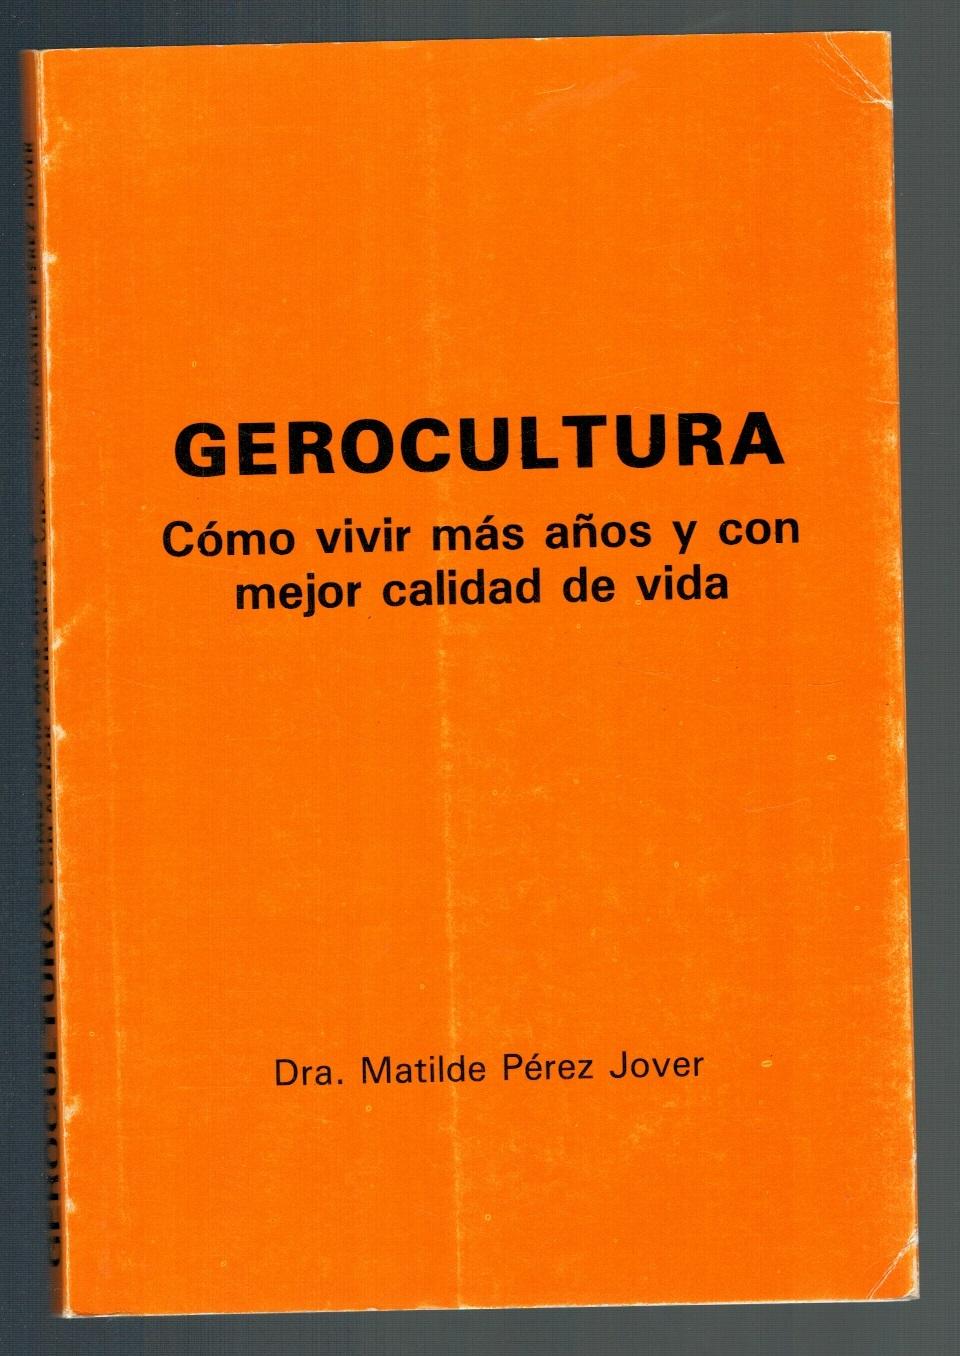 GEROCULTURA. CÓMO VIVIR MÁS AÑOS Y CON MEJOR CALIDAD DE VIDA - Dra. Matilde Pérez Jover